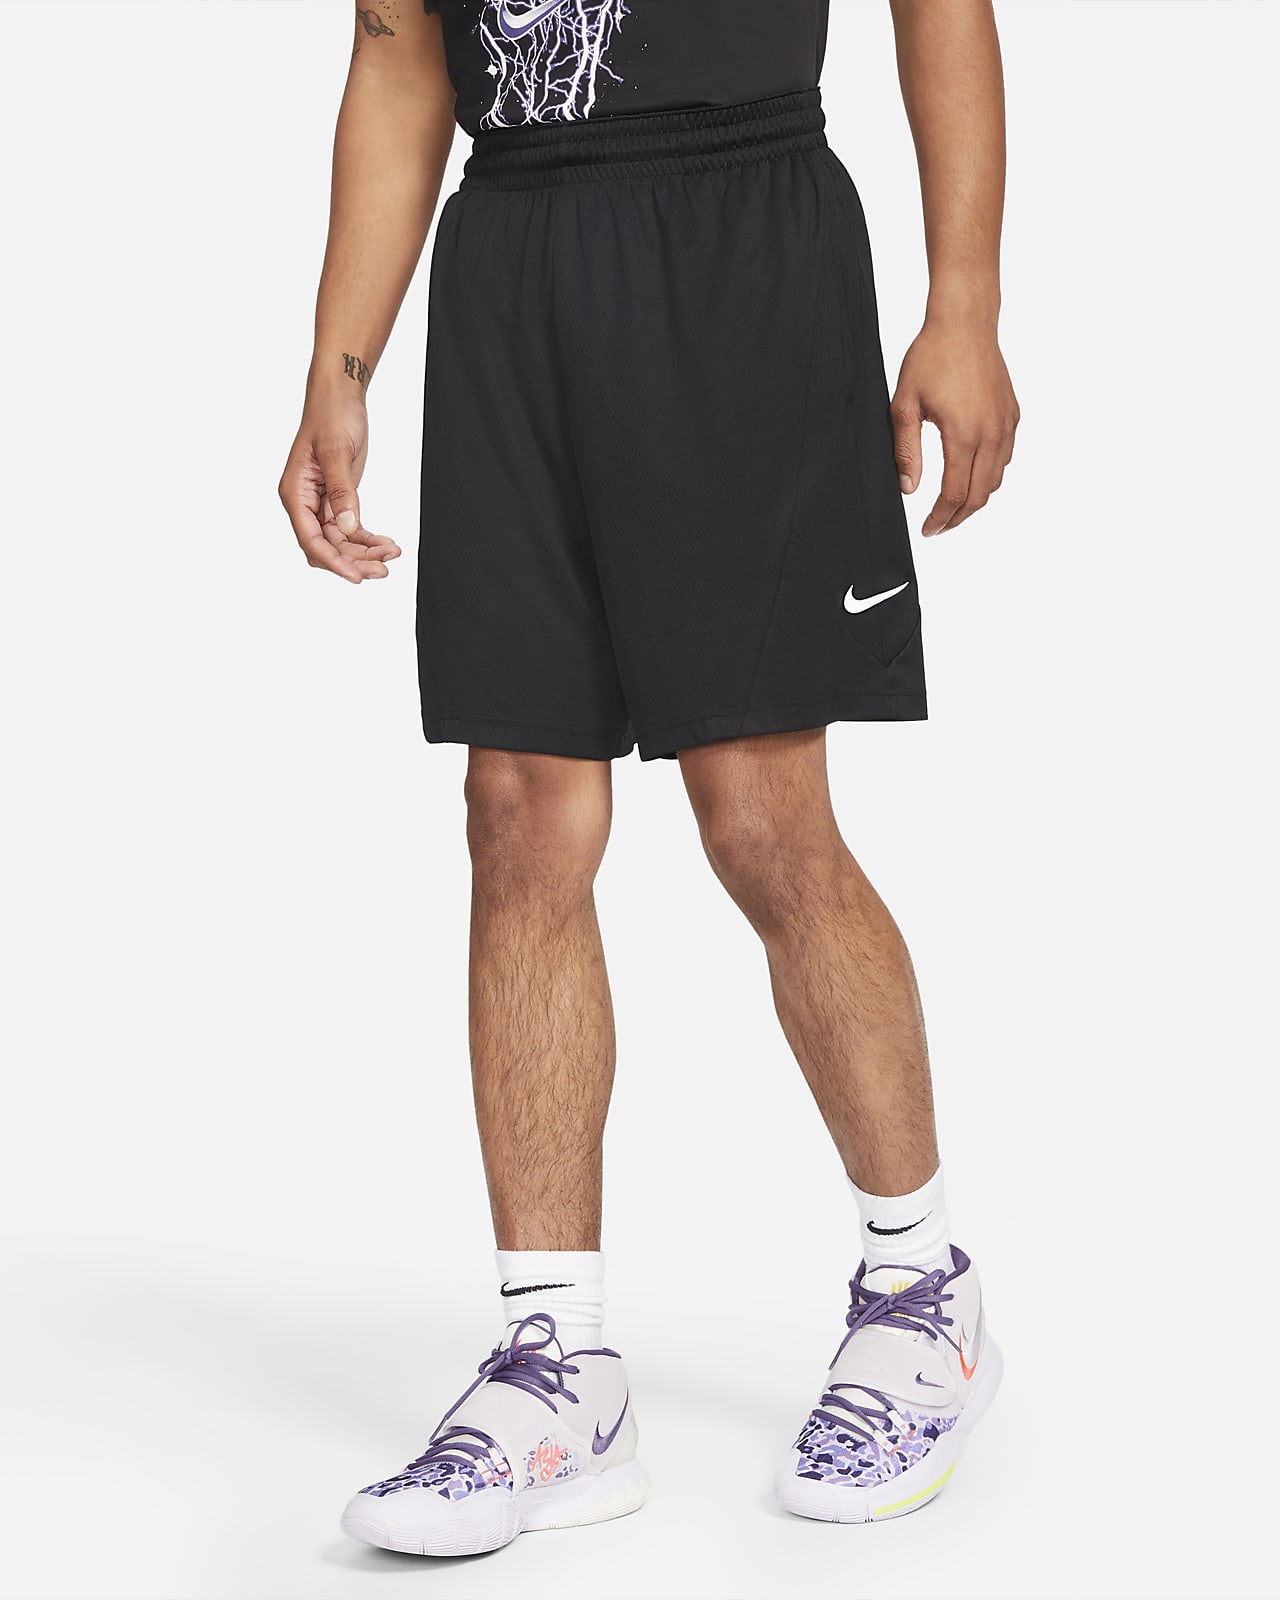 Shorts de básquetbol para hombre Nike Dri-FIT Rival